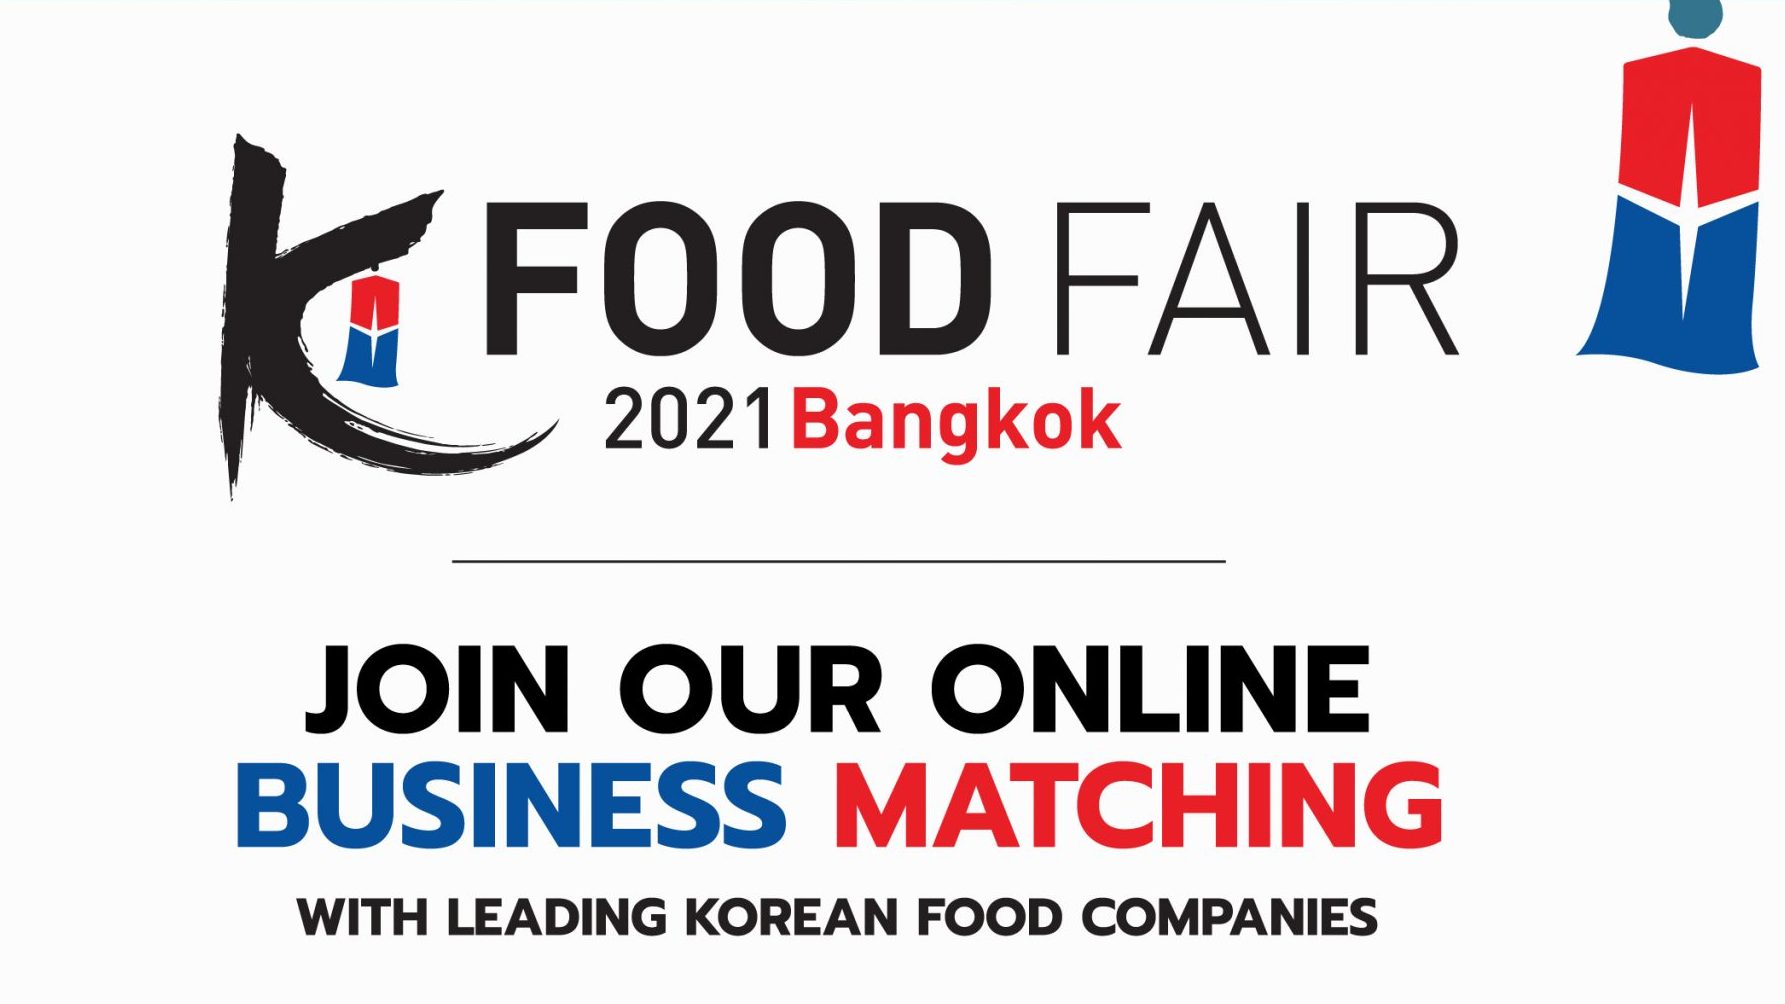 aT-Center K-Food Fair 2021 Bangkok